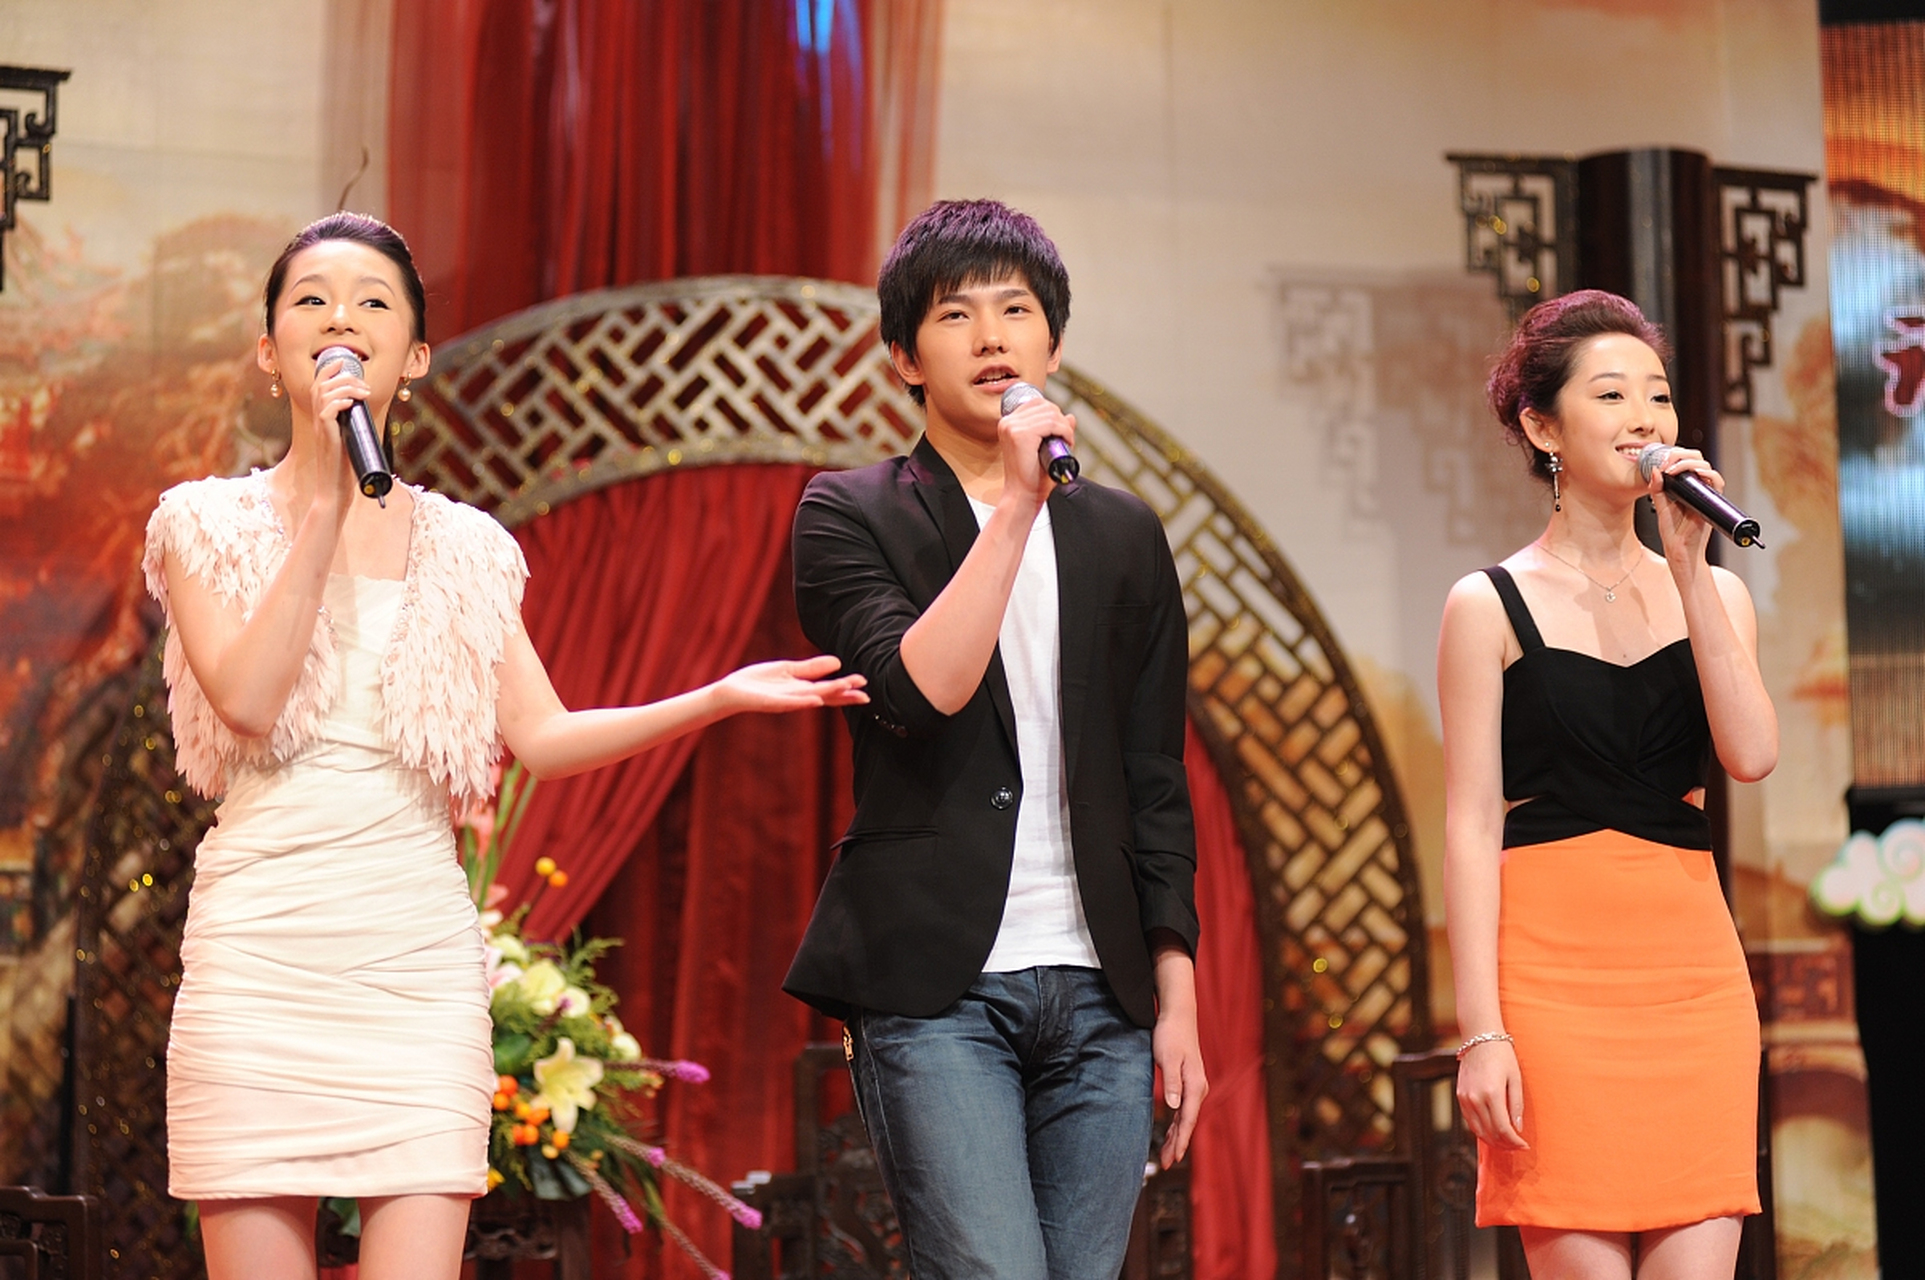 多年前,李沁,杨洋,蒋梦婕同台唱歌!那时的杨洋,感觉好稚嫩!